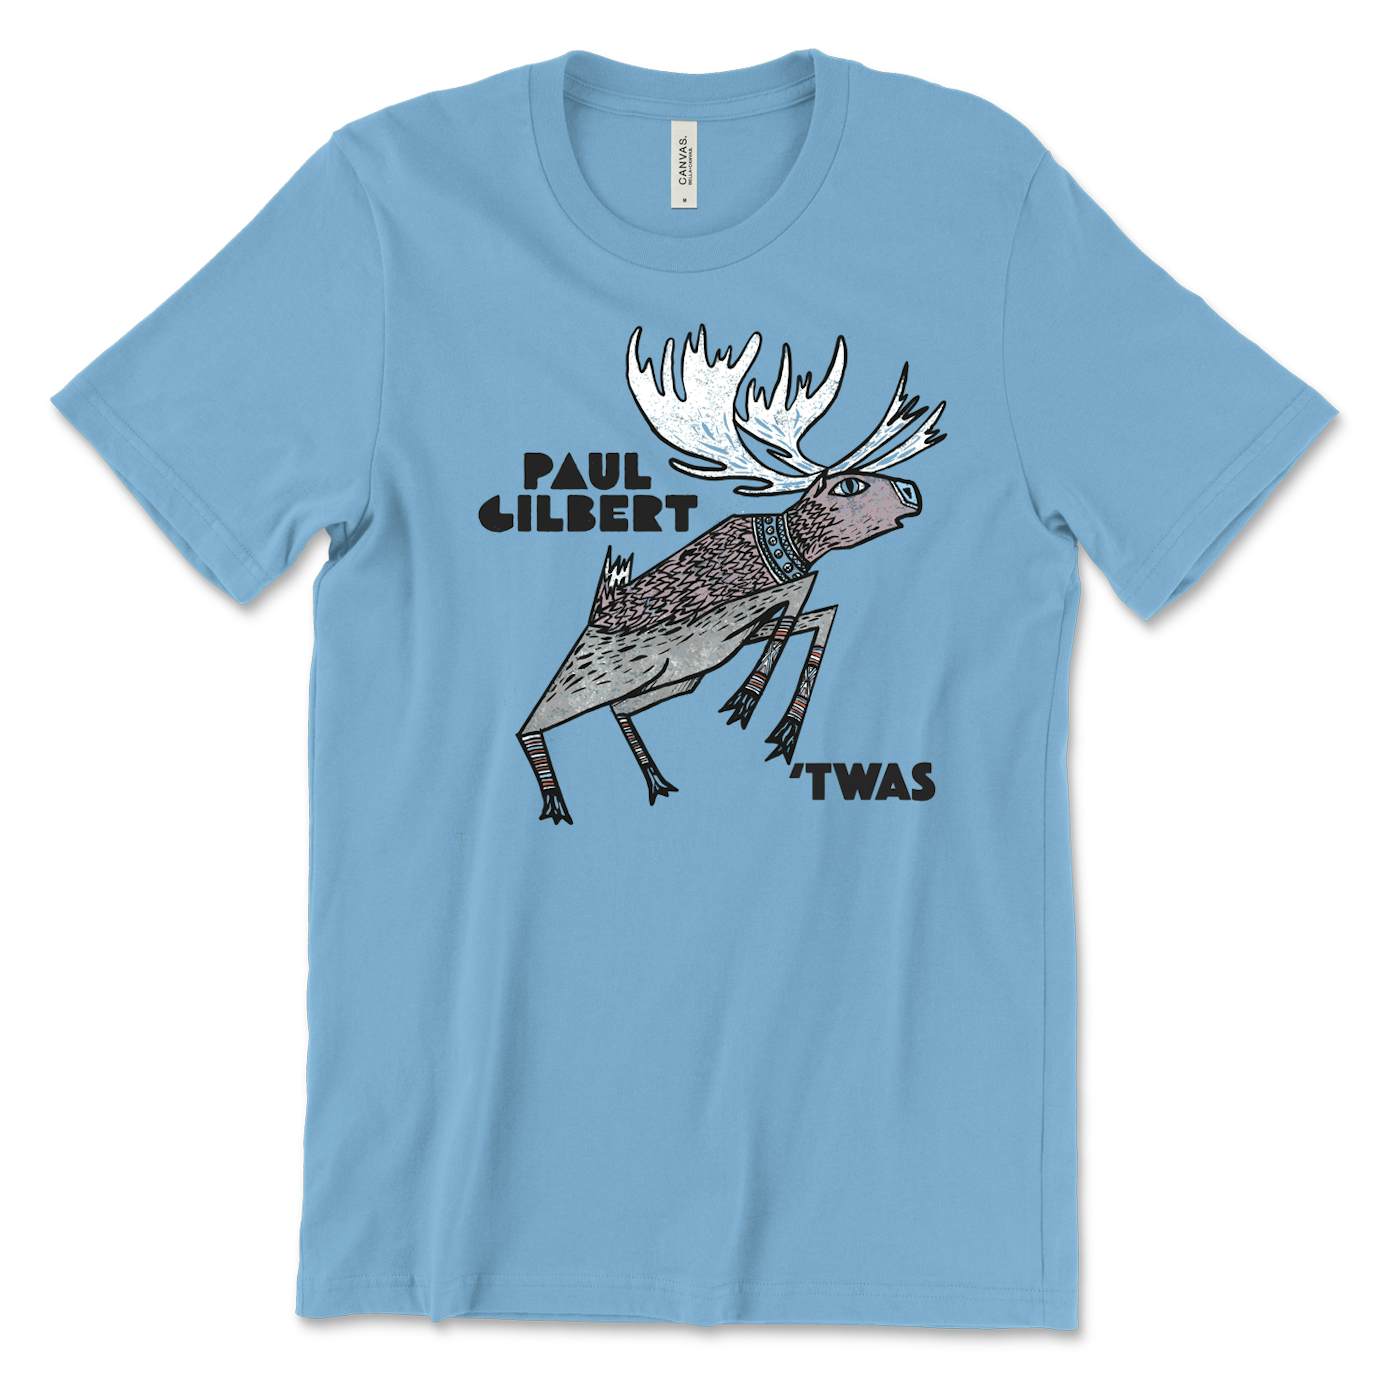 Paul Gilbert - TWAS Shirt